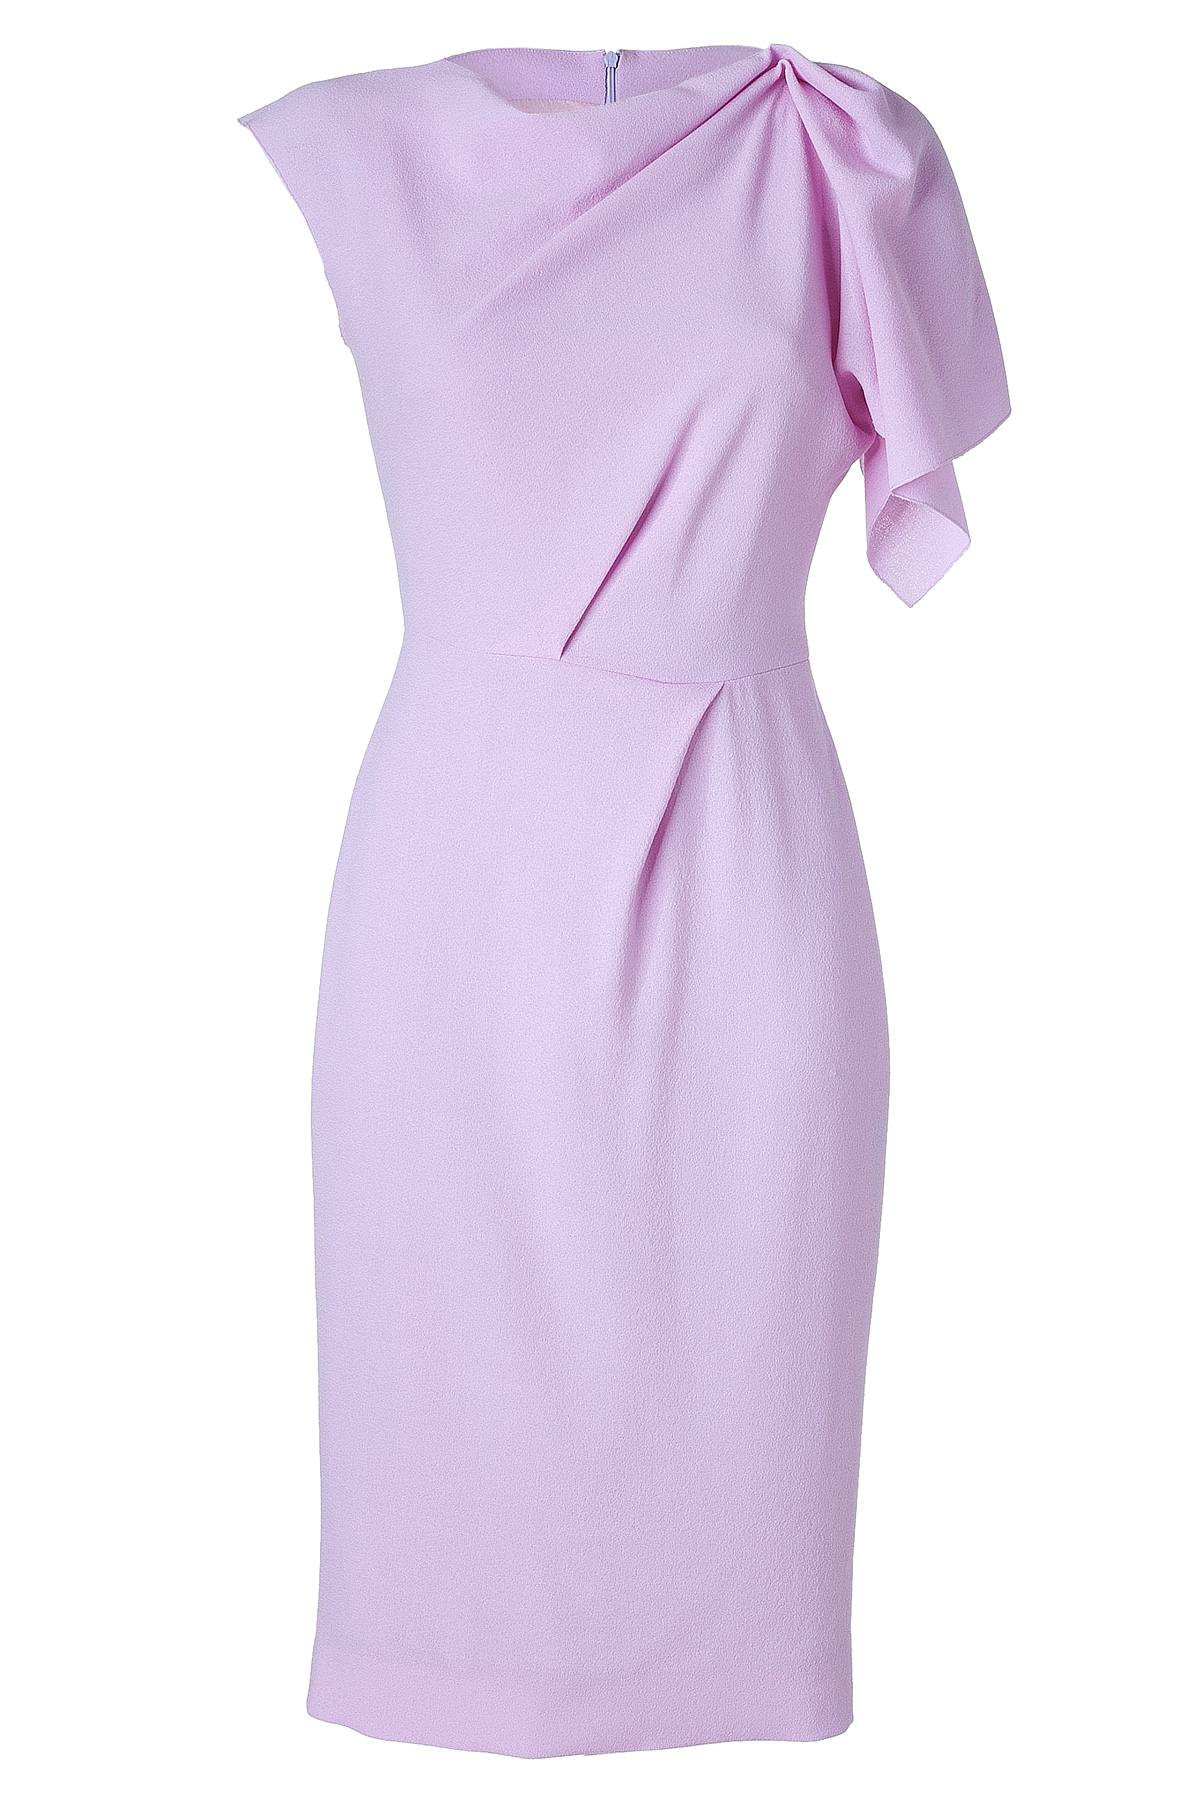 Lyst - Roksanda Lilac Onesleeve Wool Crepe Dress in Pink